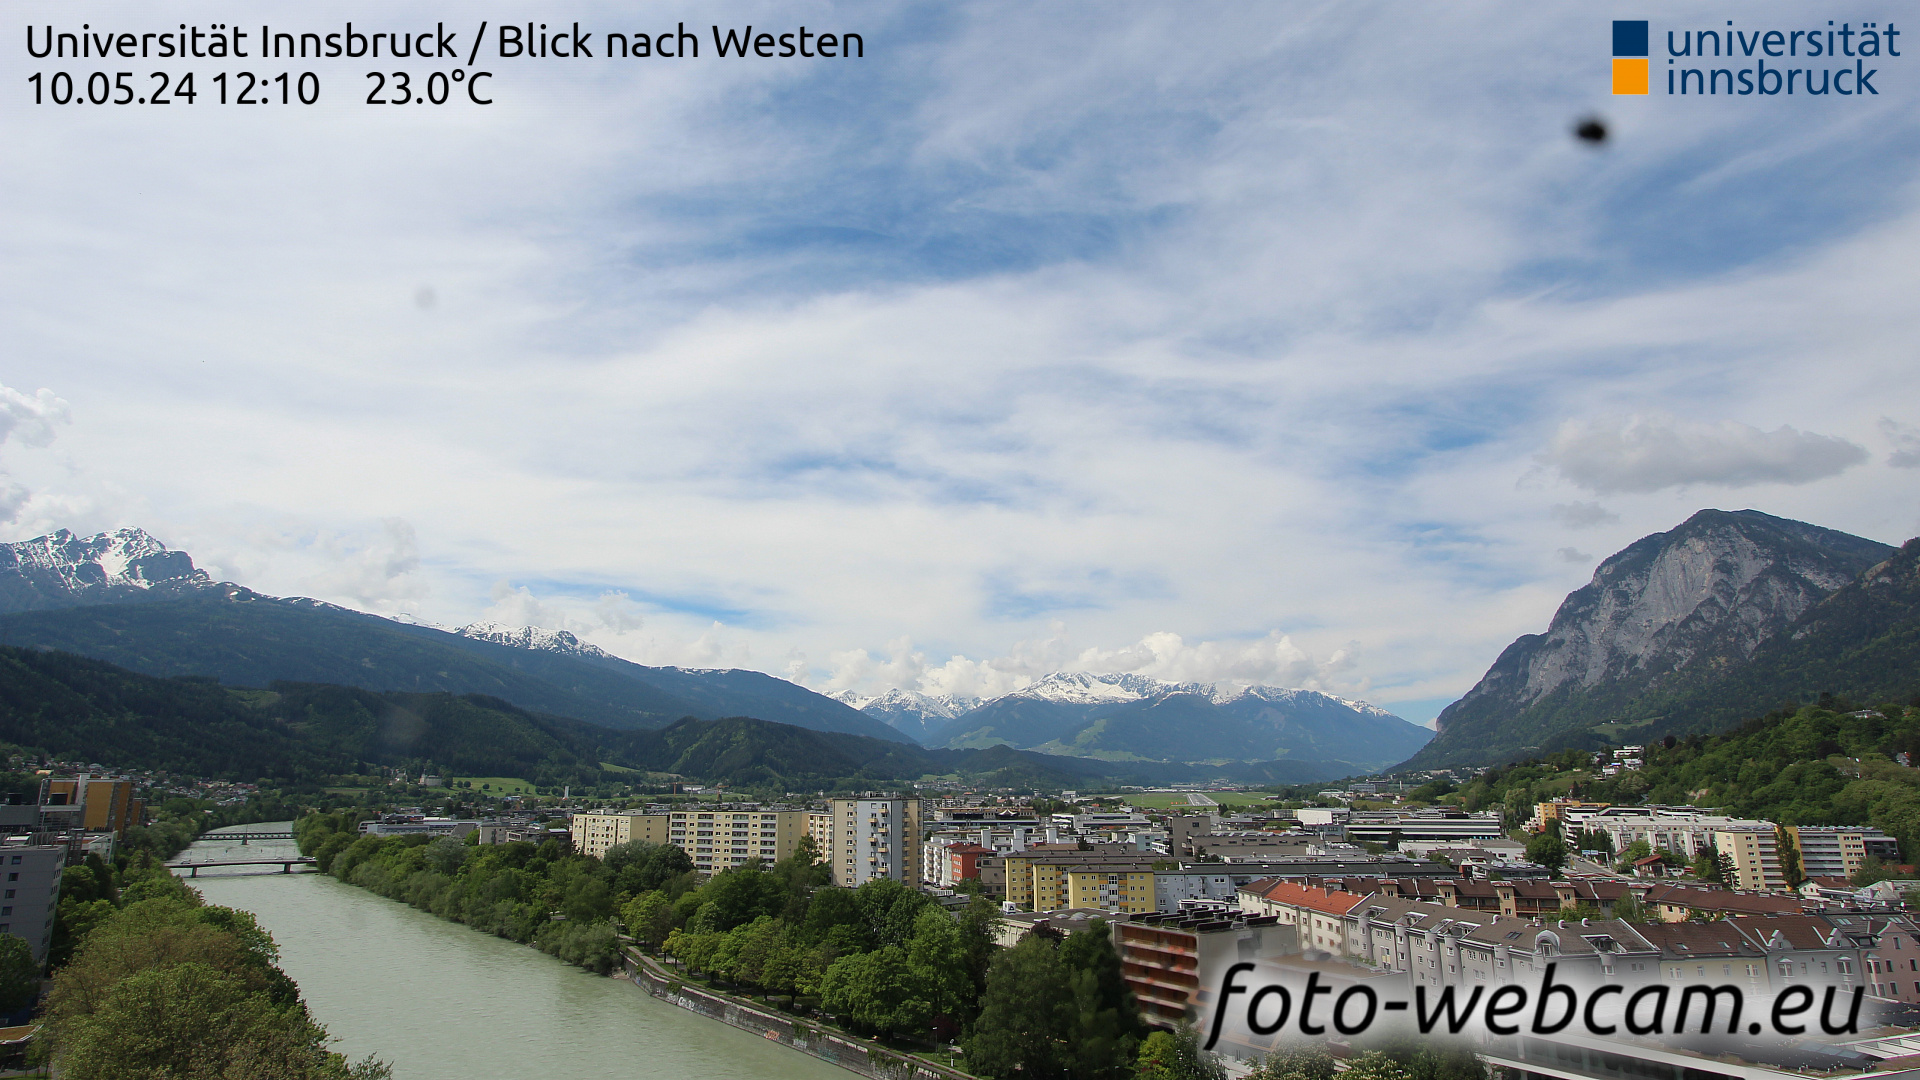 Innsbruck Thu. 12:17